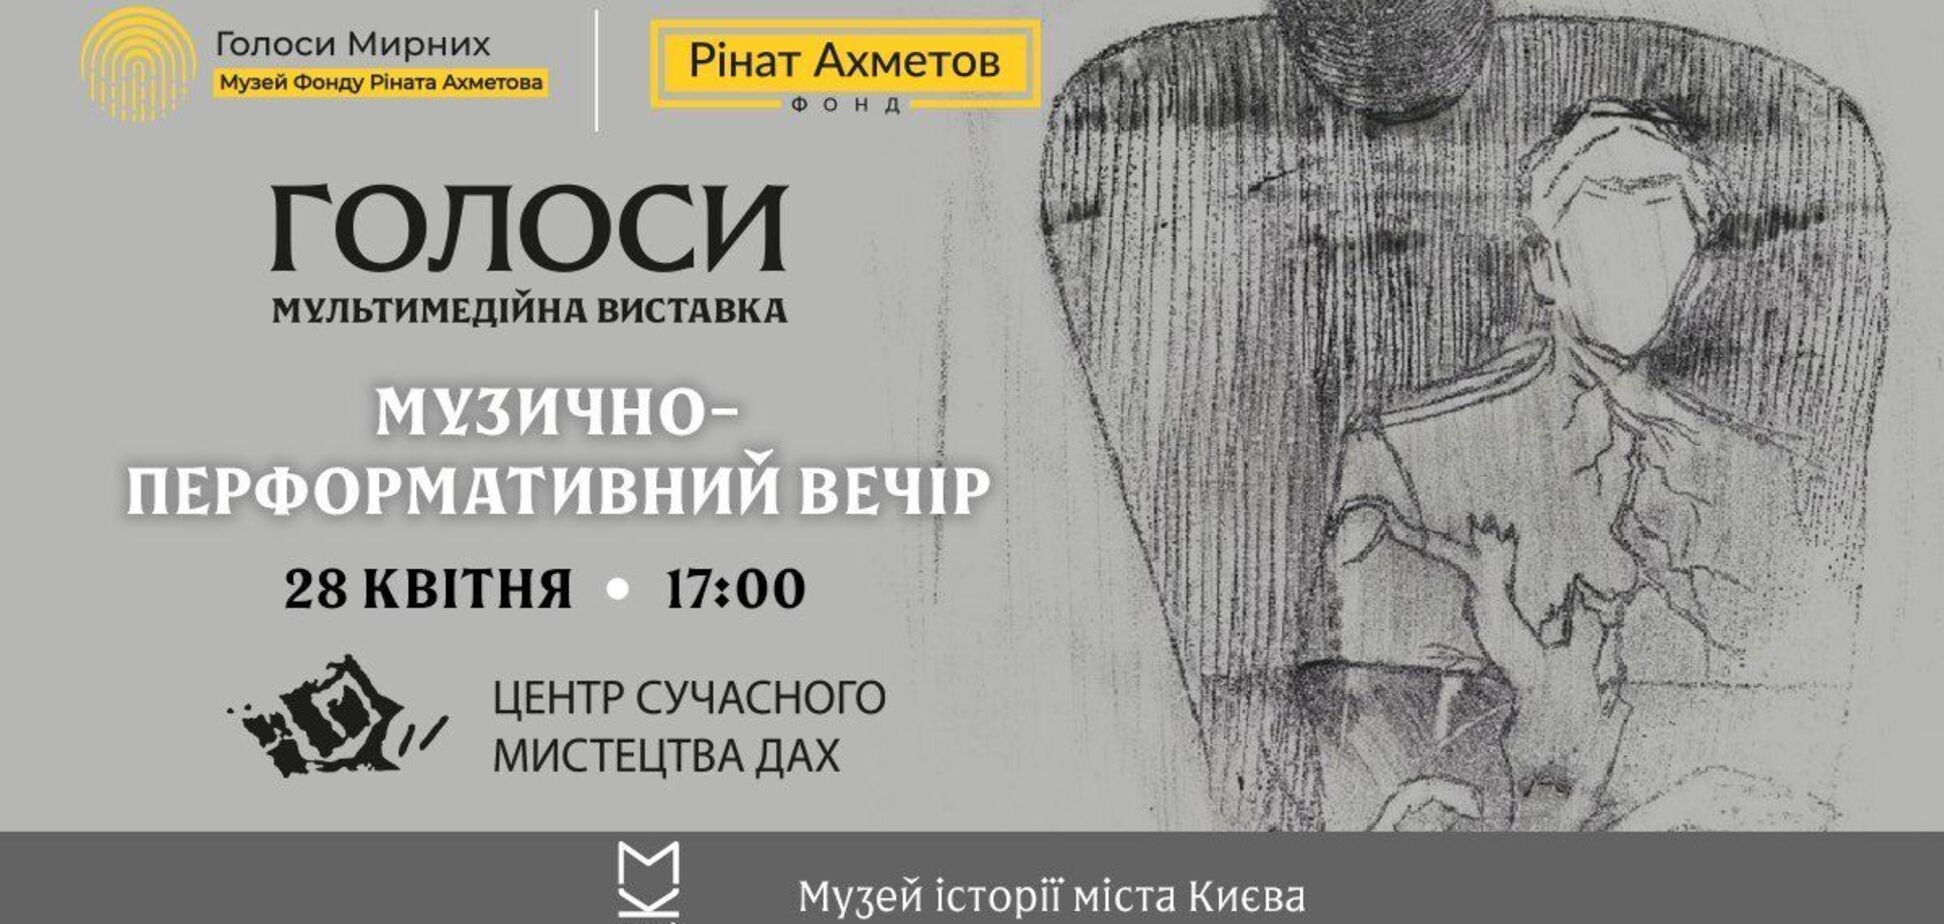 Стихи Стуса и Шевченко: на выставке 'Голоса' состоится музыкально-перформативный вечер